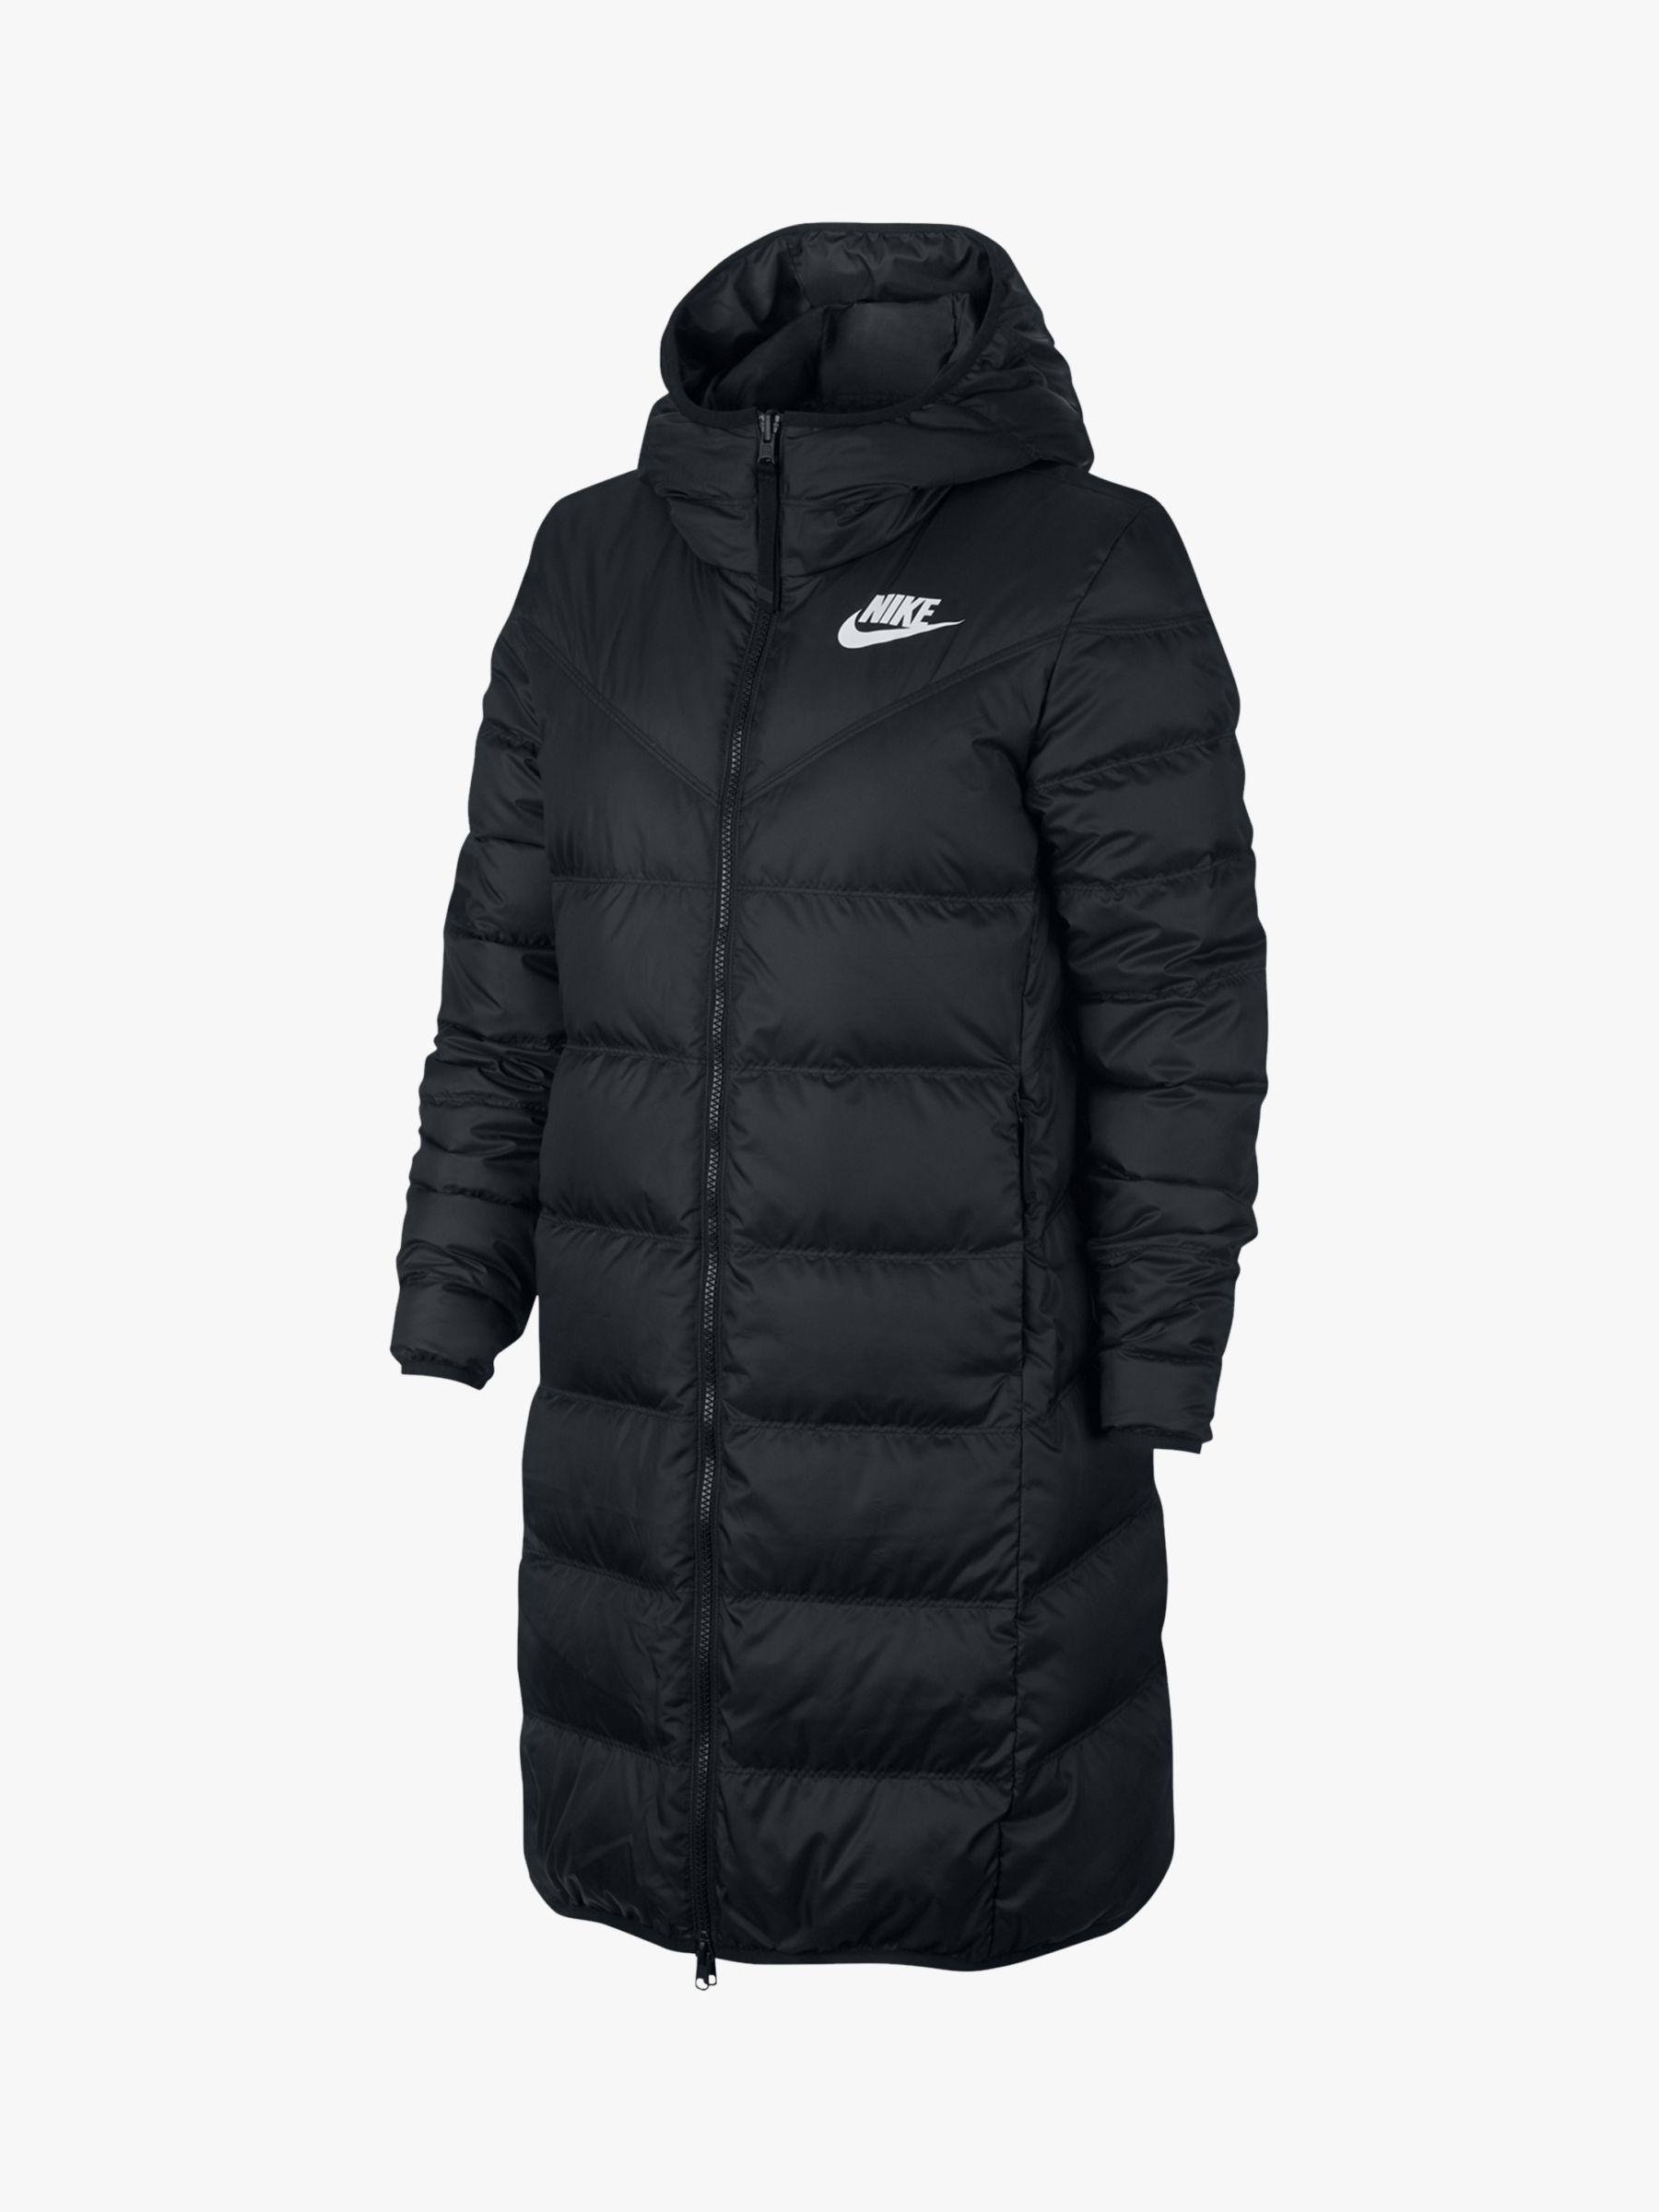 Nike Down Fill Women's Reversible Parka Coat in Black | Lyst UK